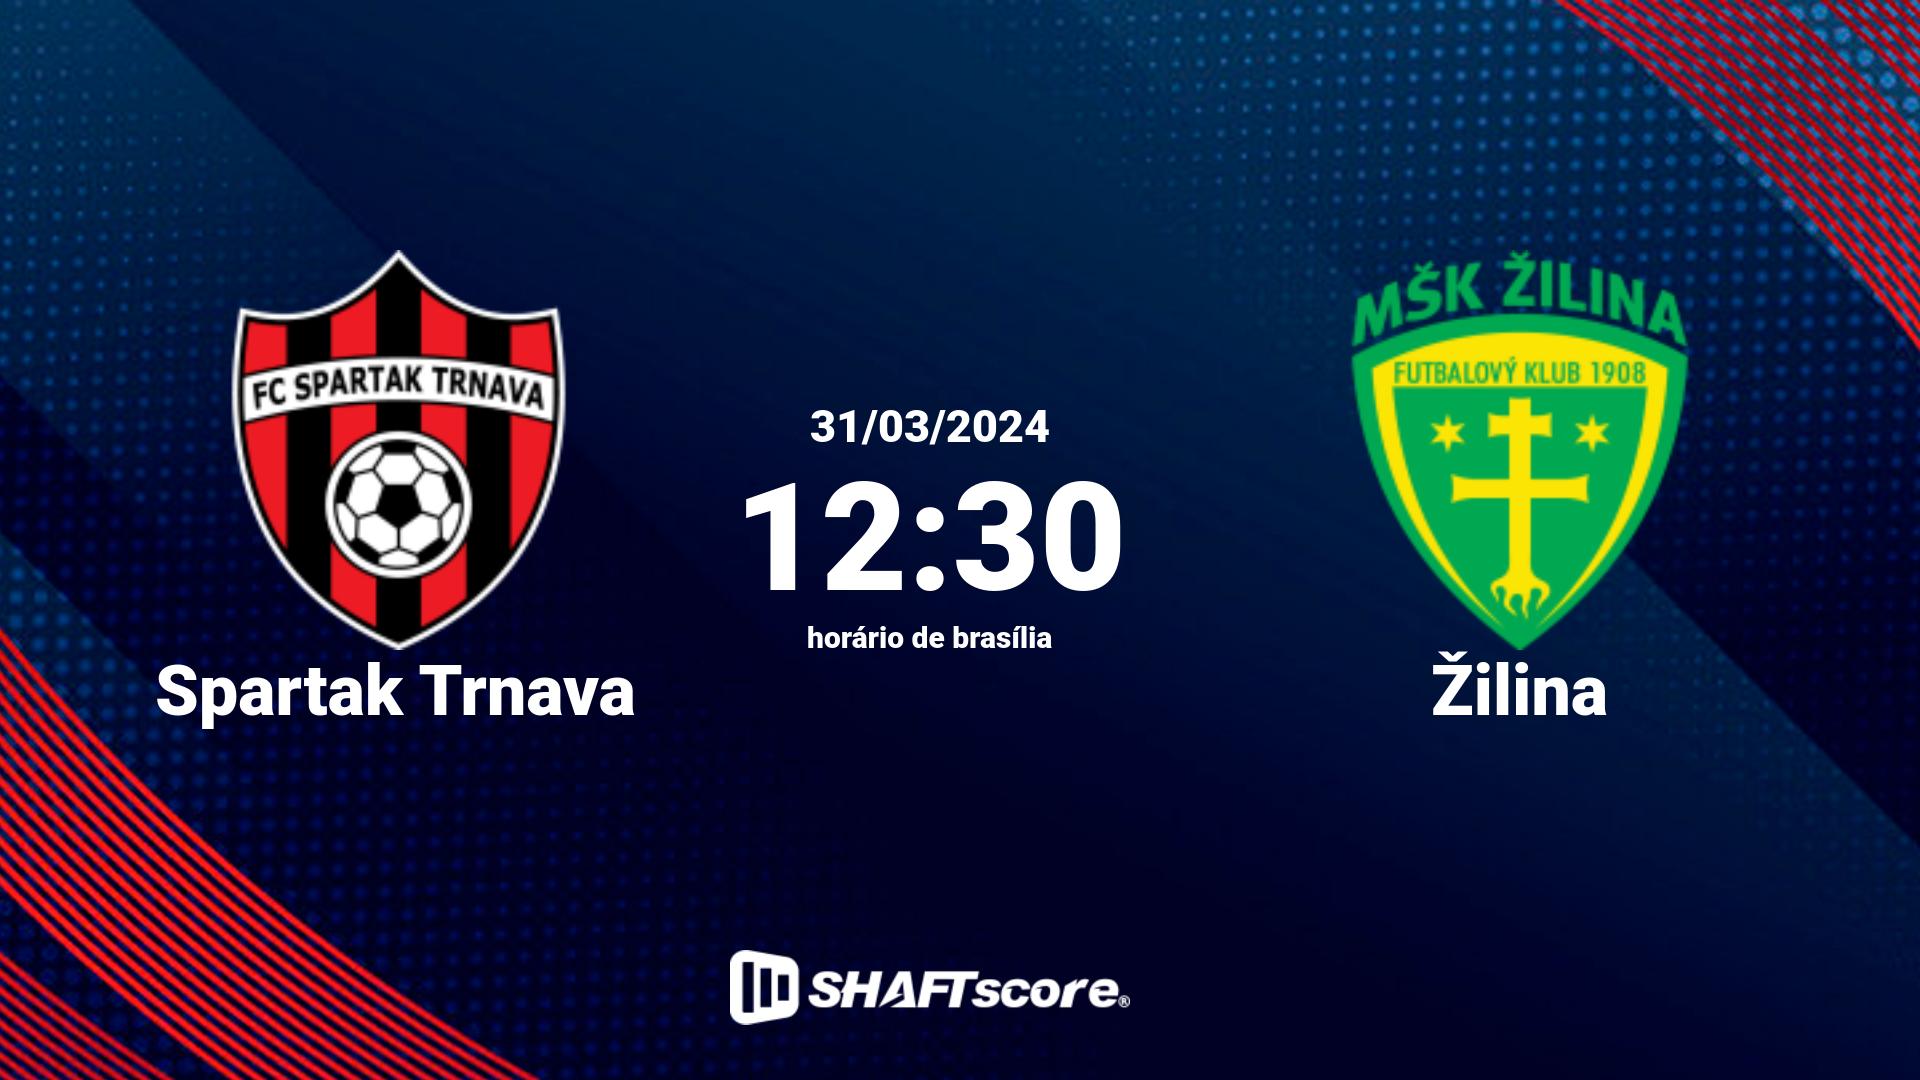 Estatísticas do jogo Spartak Trnava vs Žilina 31.03 12:30